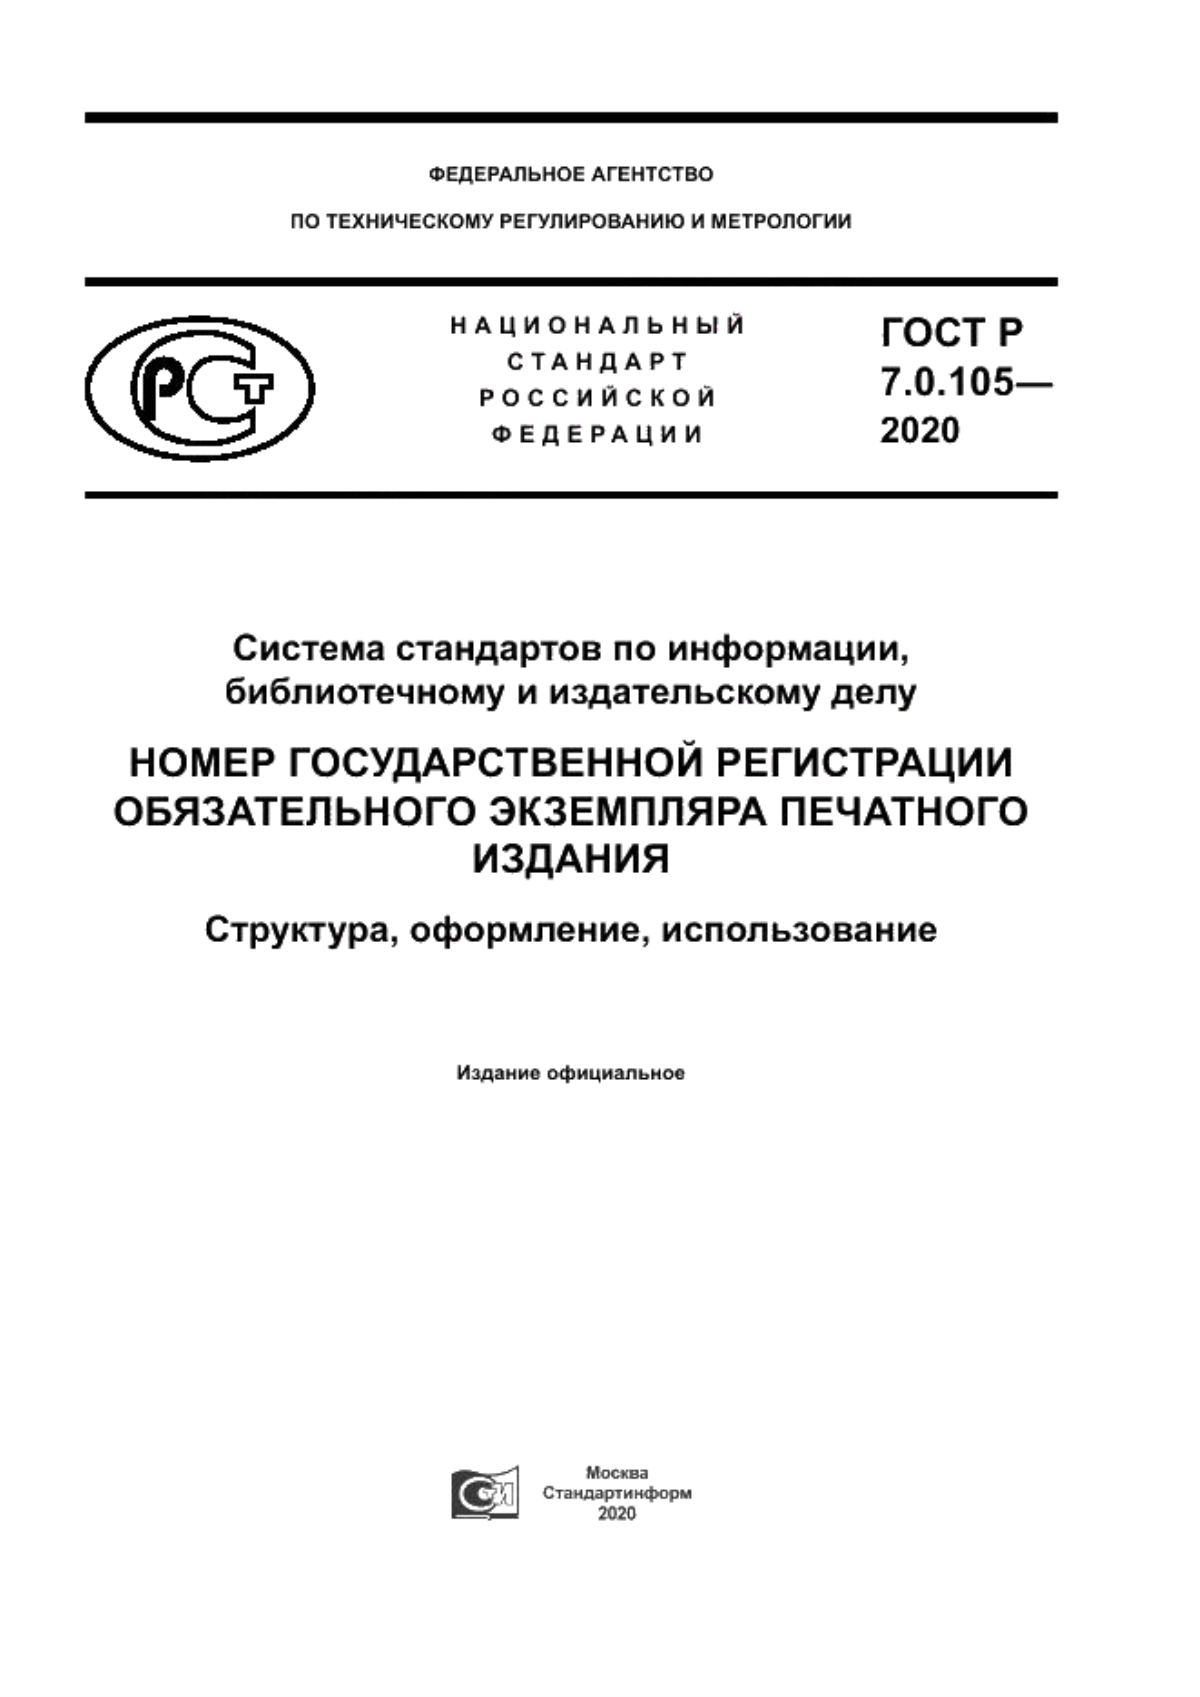 ГОСТ Р 7.0.105-2020 Система стандартов по информации, библиотечному и издательскому делу. Номер государственной регистрации обязательного экземпляра печатного издания. Структура, оформление, использование